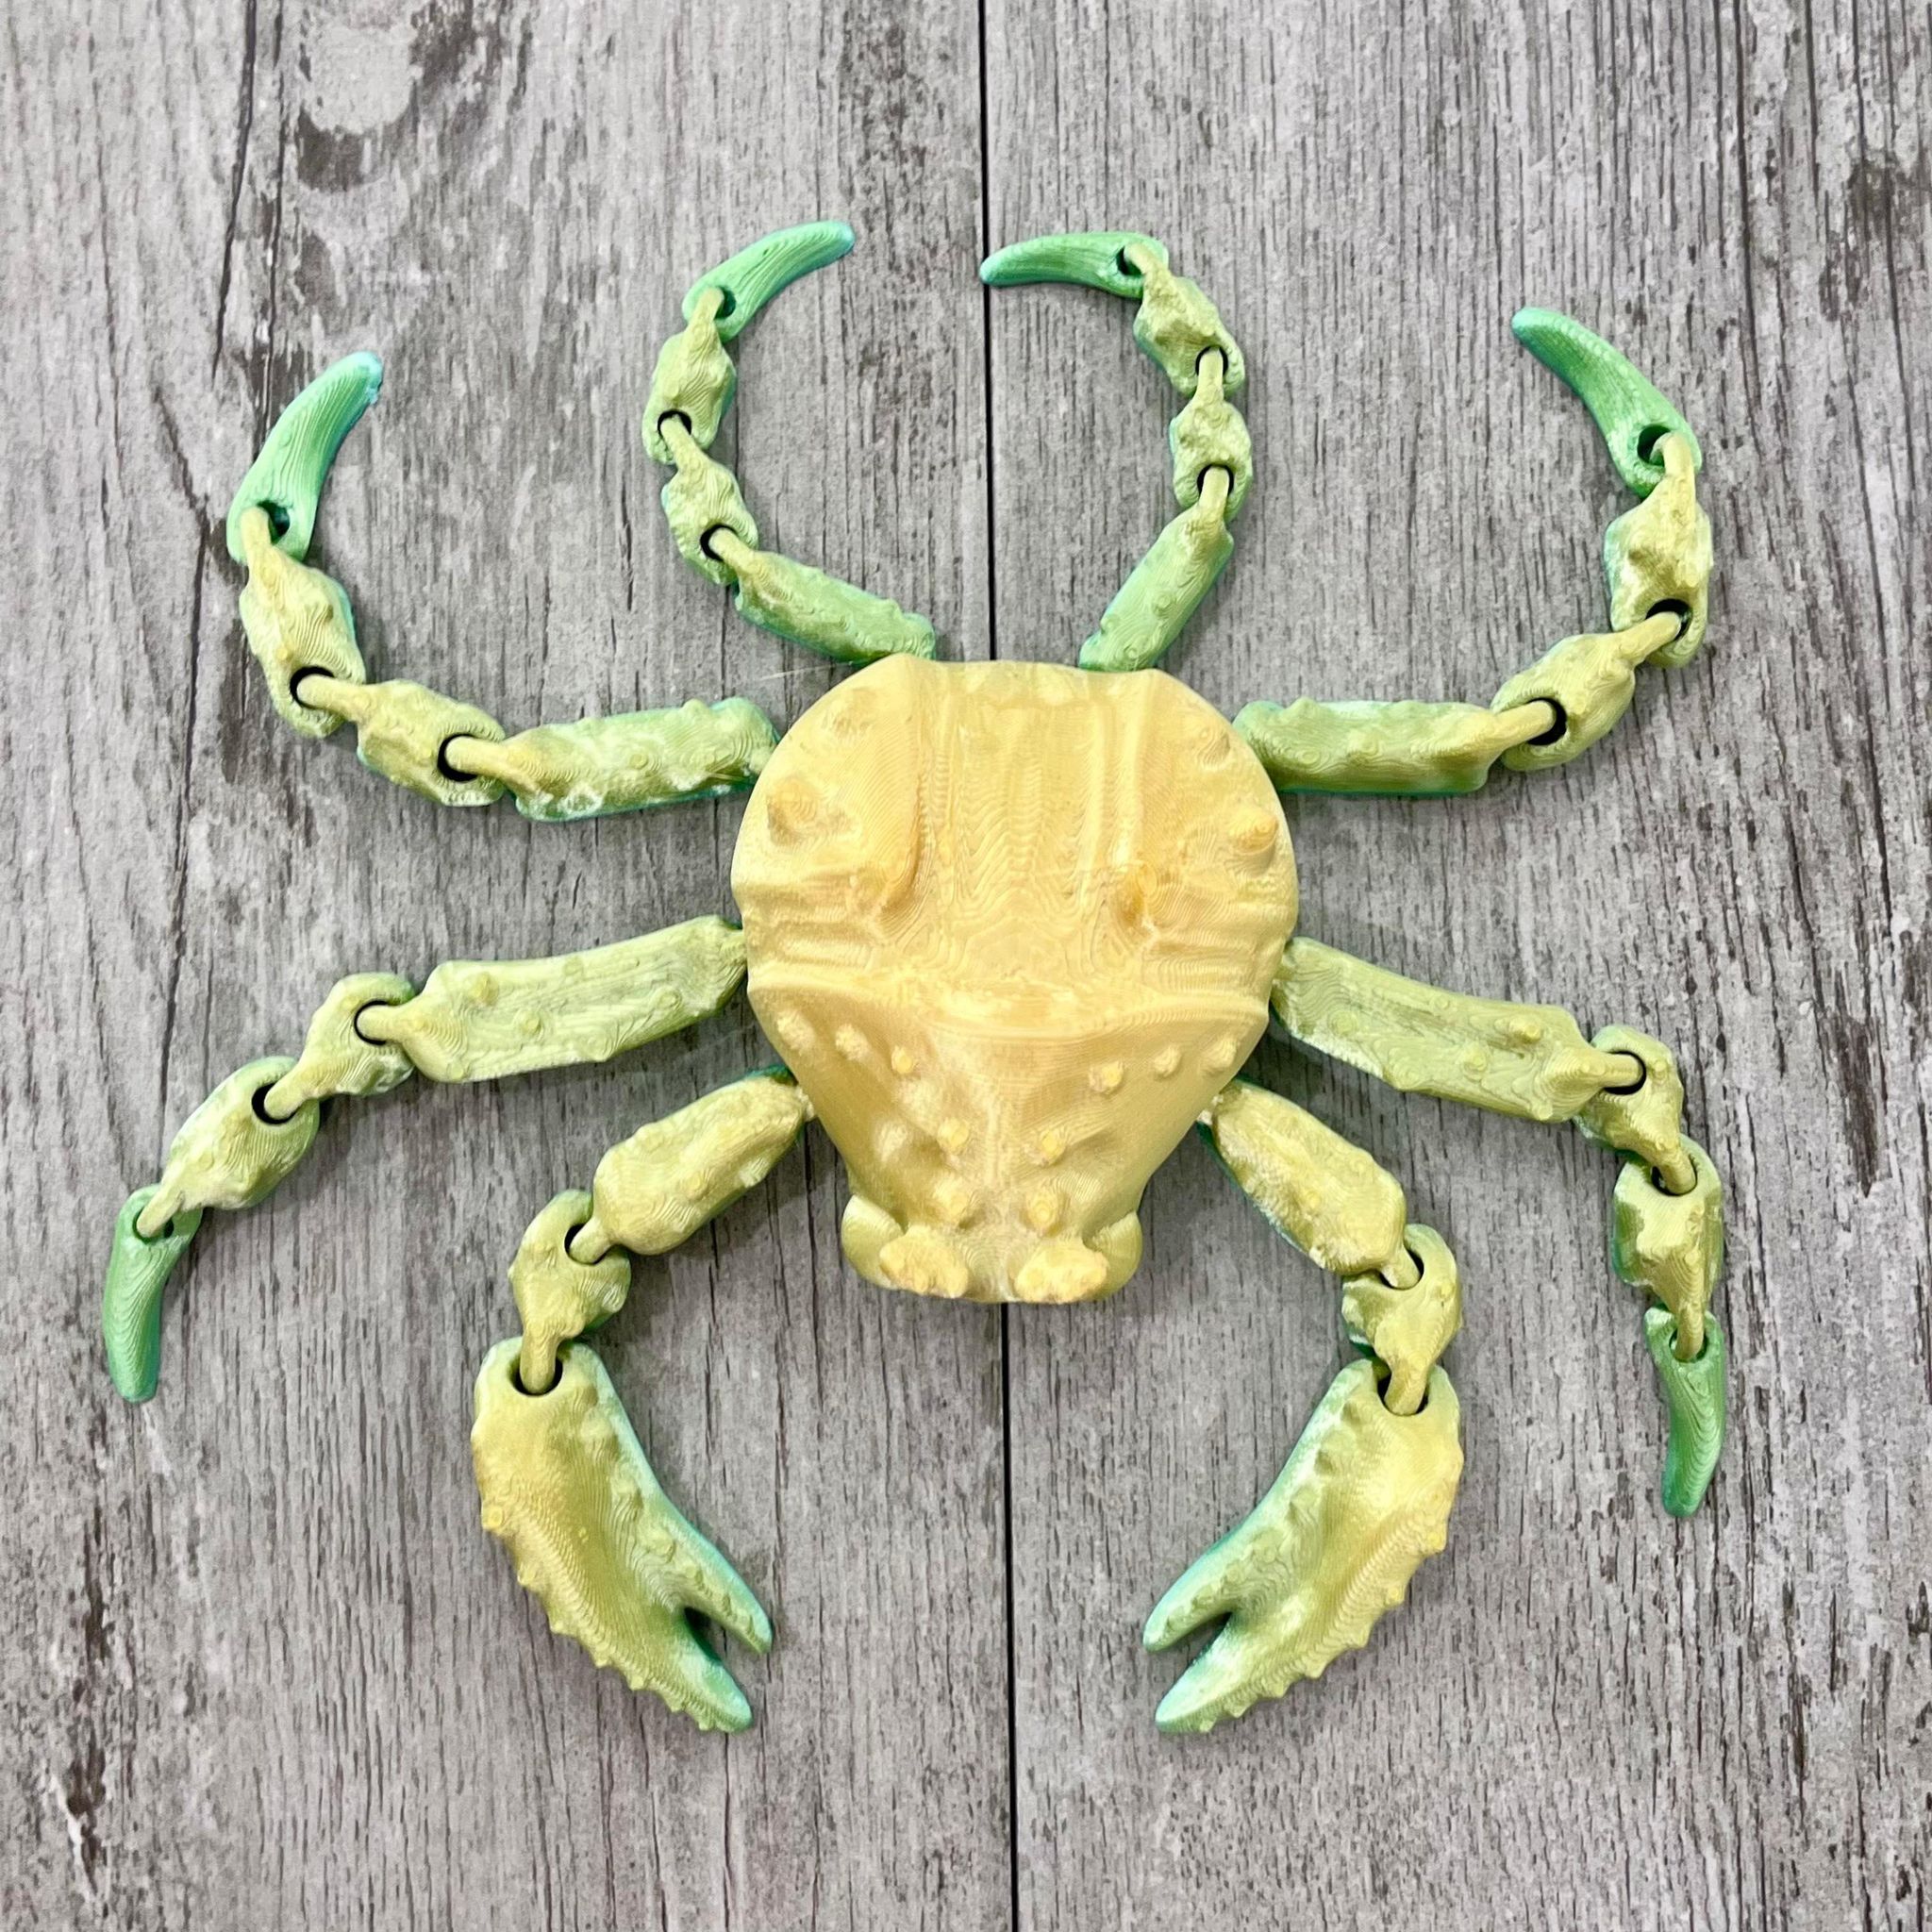 3D Printed Crab